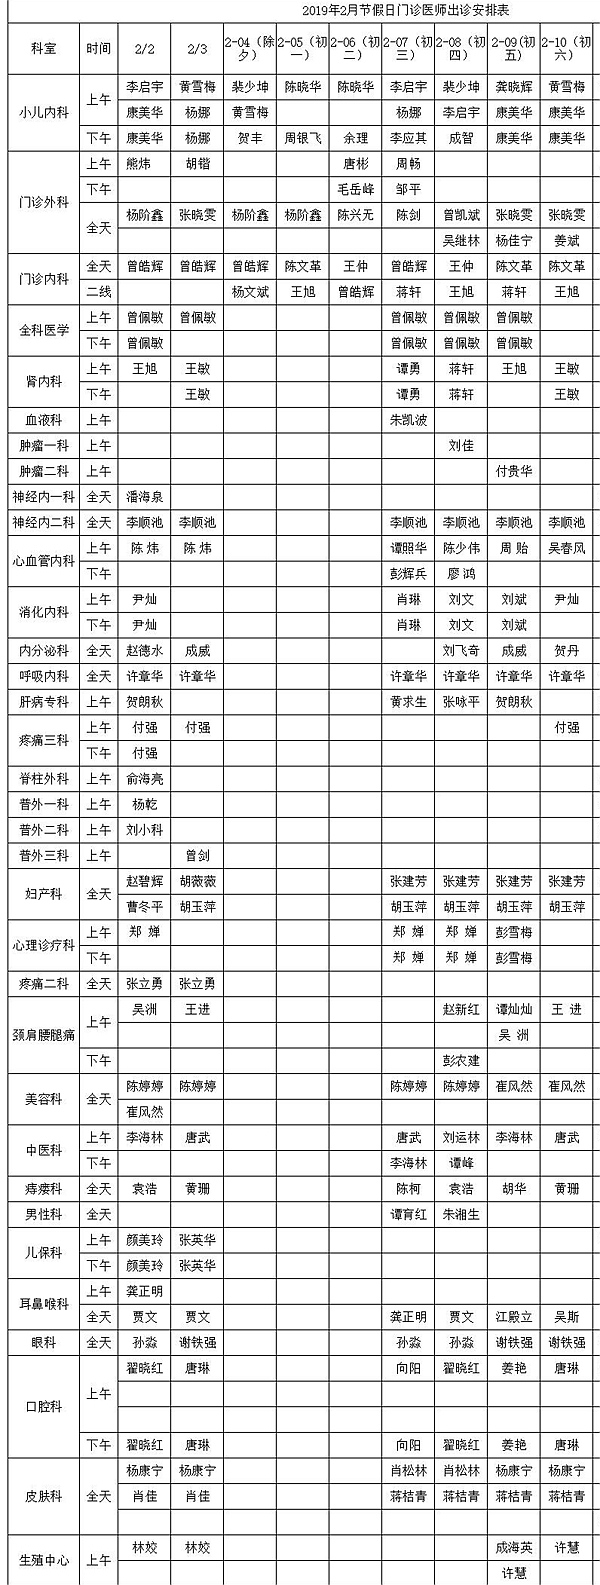 速收藏 湘潭多个医院春节值班安排表